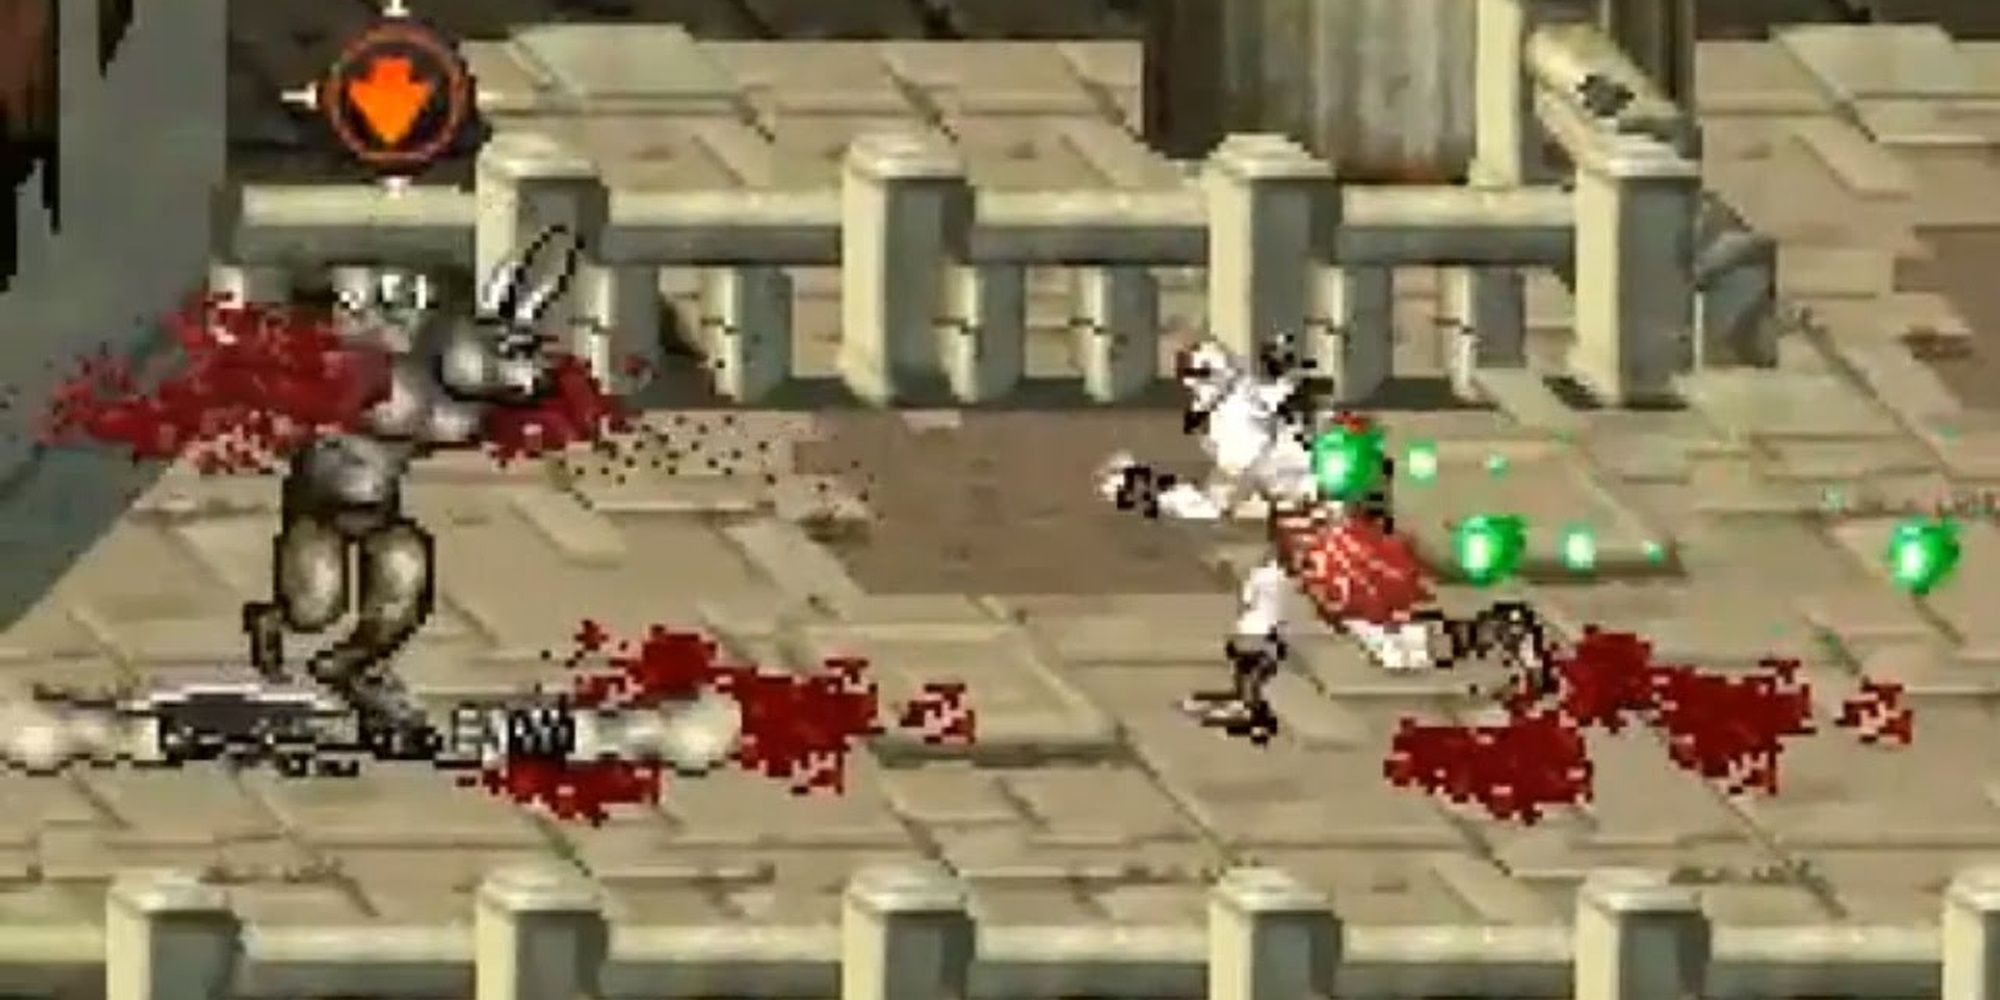 God of War Betrayal gameplay, with Kratos fighting a Minotaur